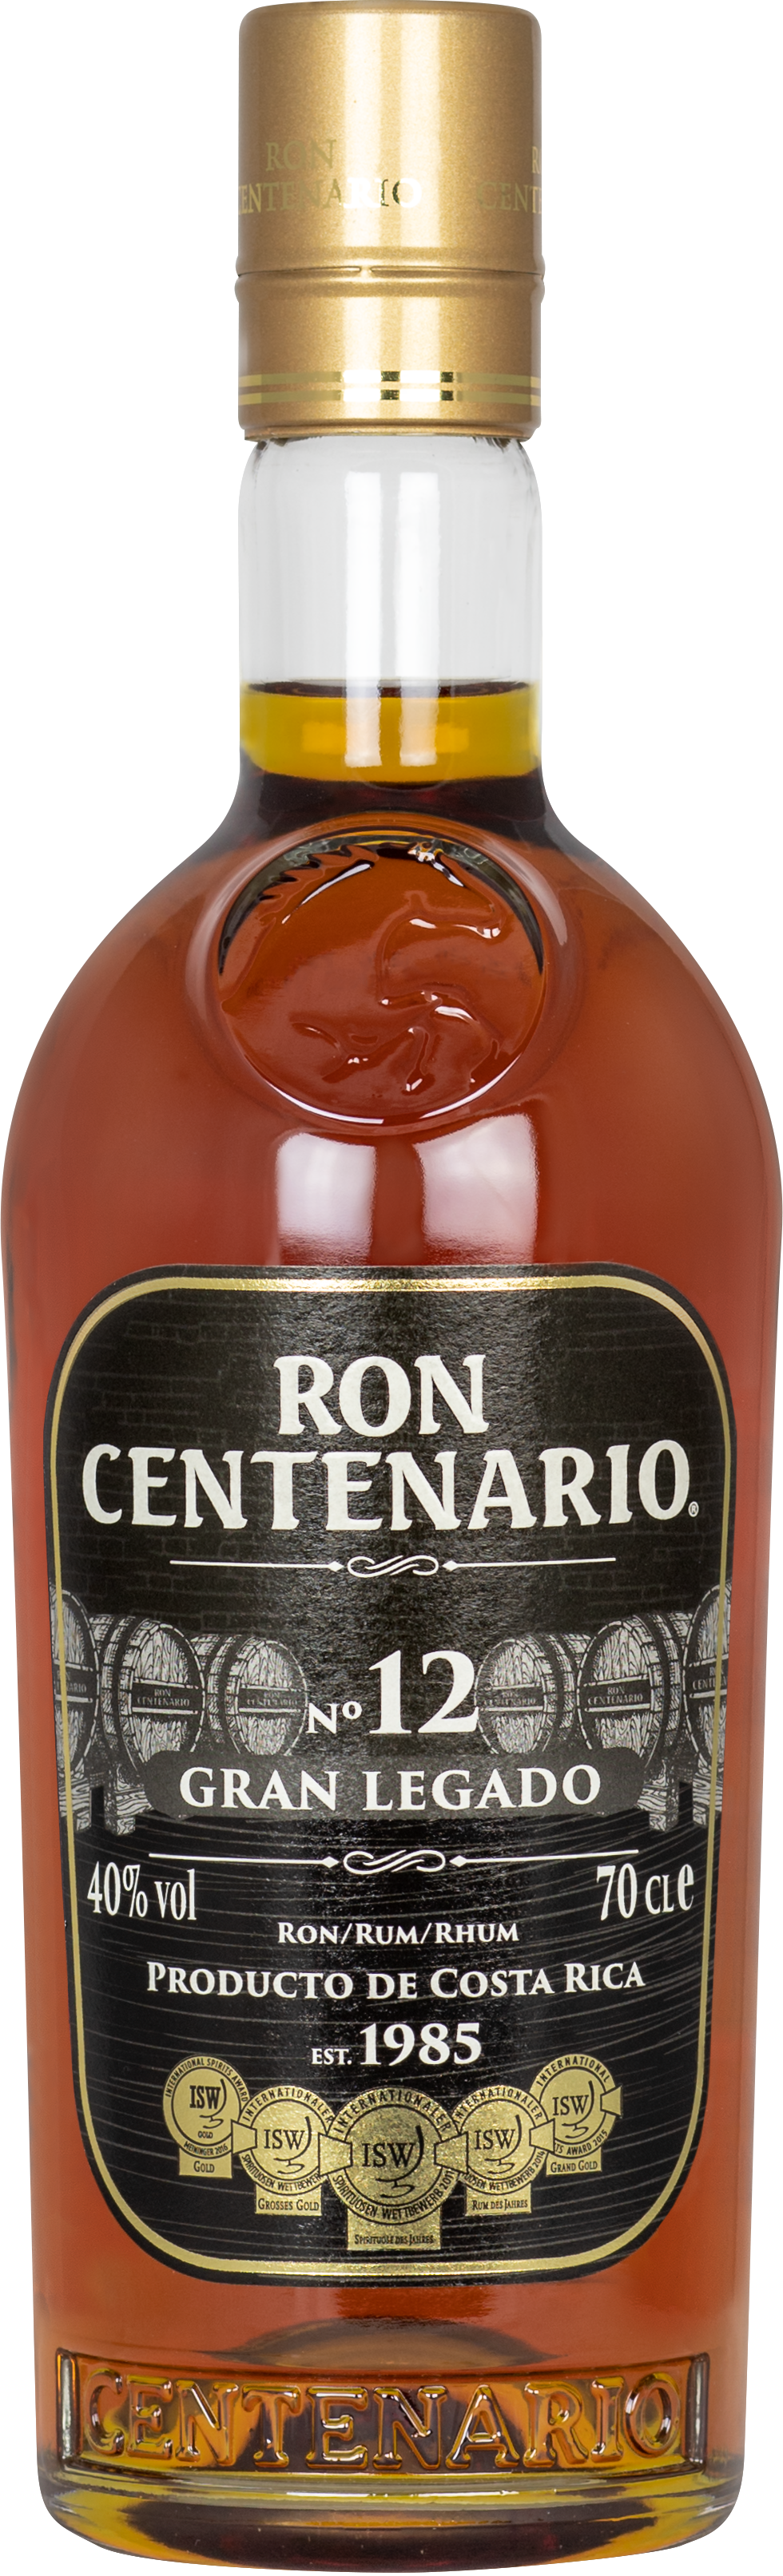 Ron Centenario 12 Jahre Gran Legado Secretos 40% 0,7l